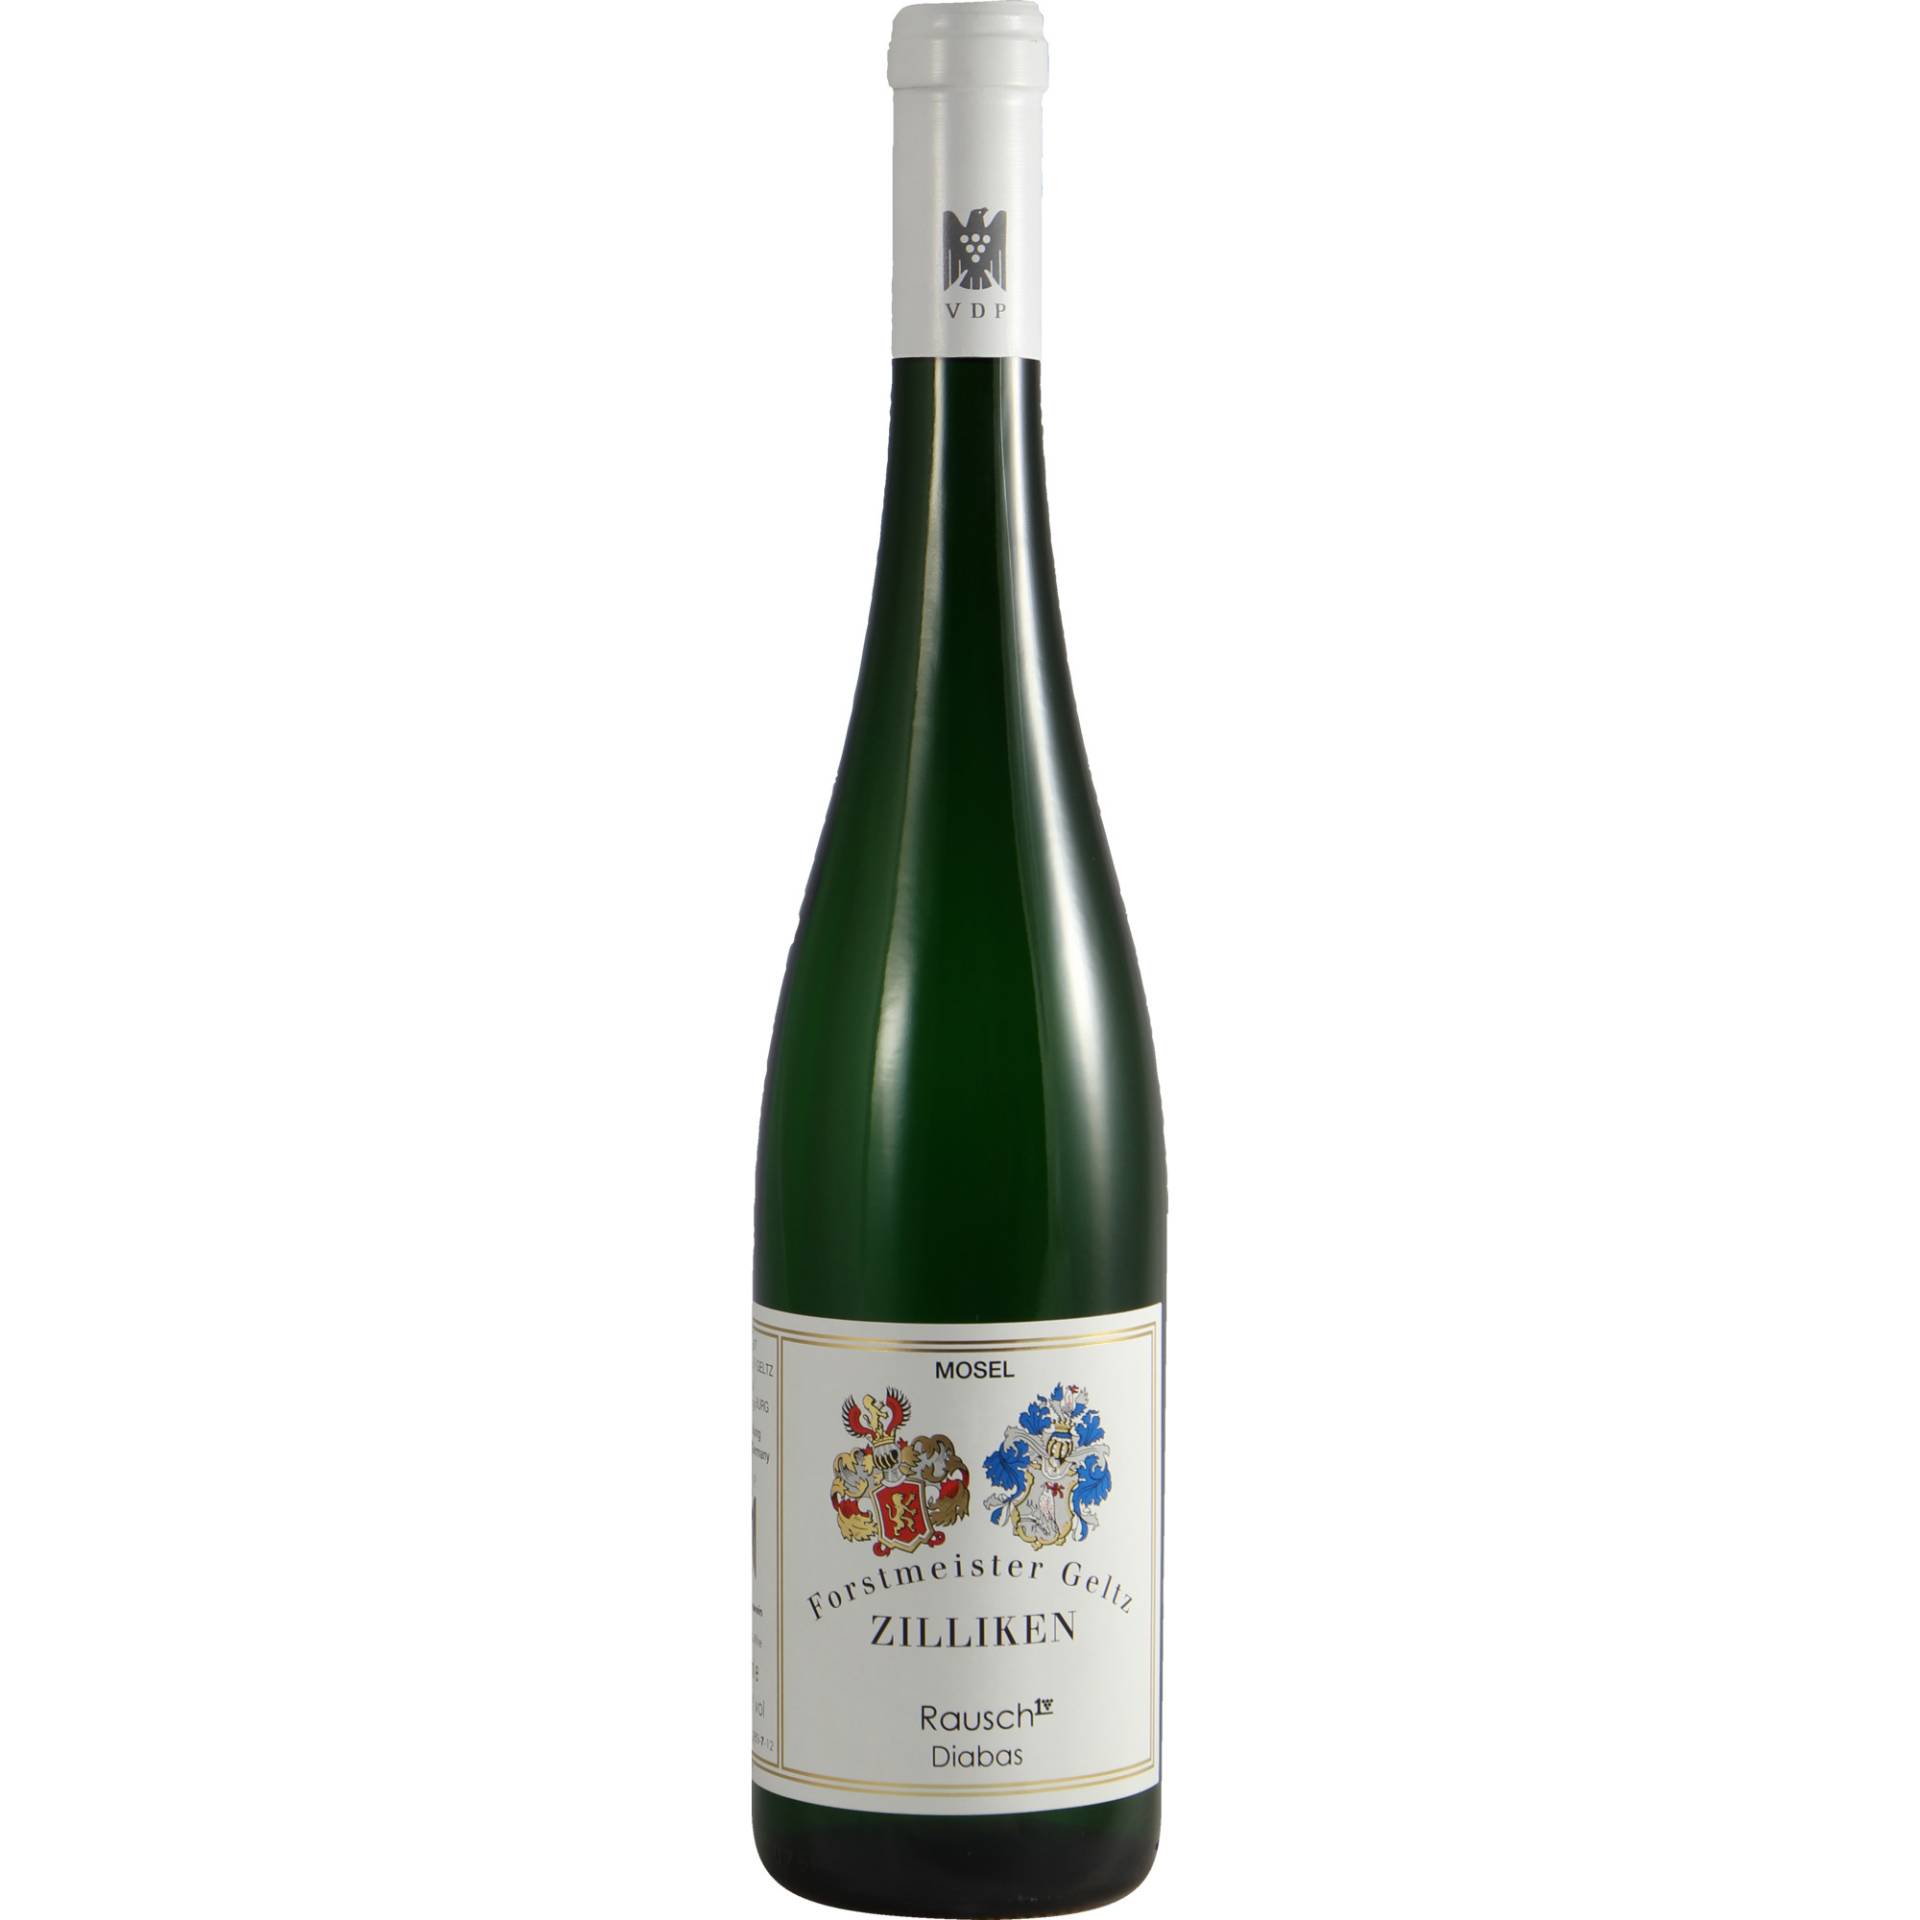 Zilliken Saarburger Rausch Diabas, Mosel, Mosel, 2016, Weißwein von Weingut Forstmeister Geltz Zilliken,54439,Saarburg,Deutschland